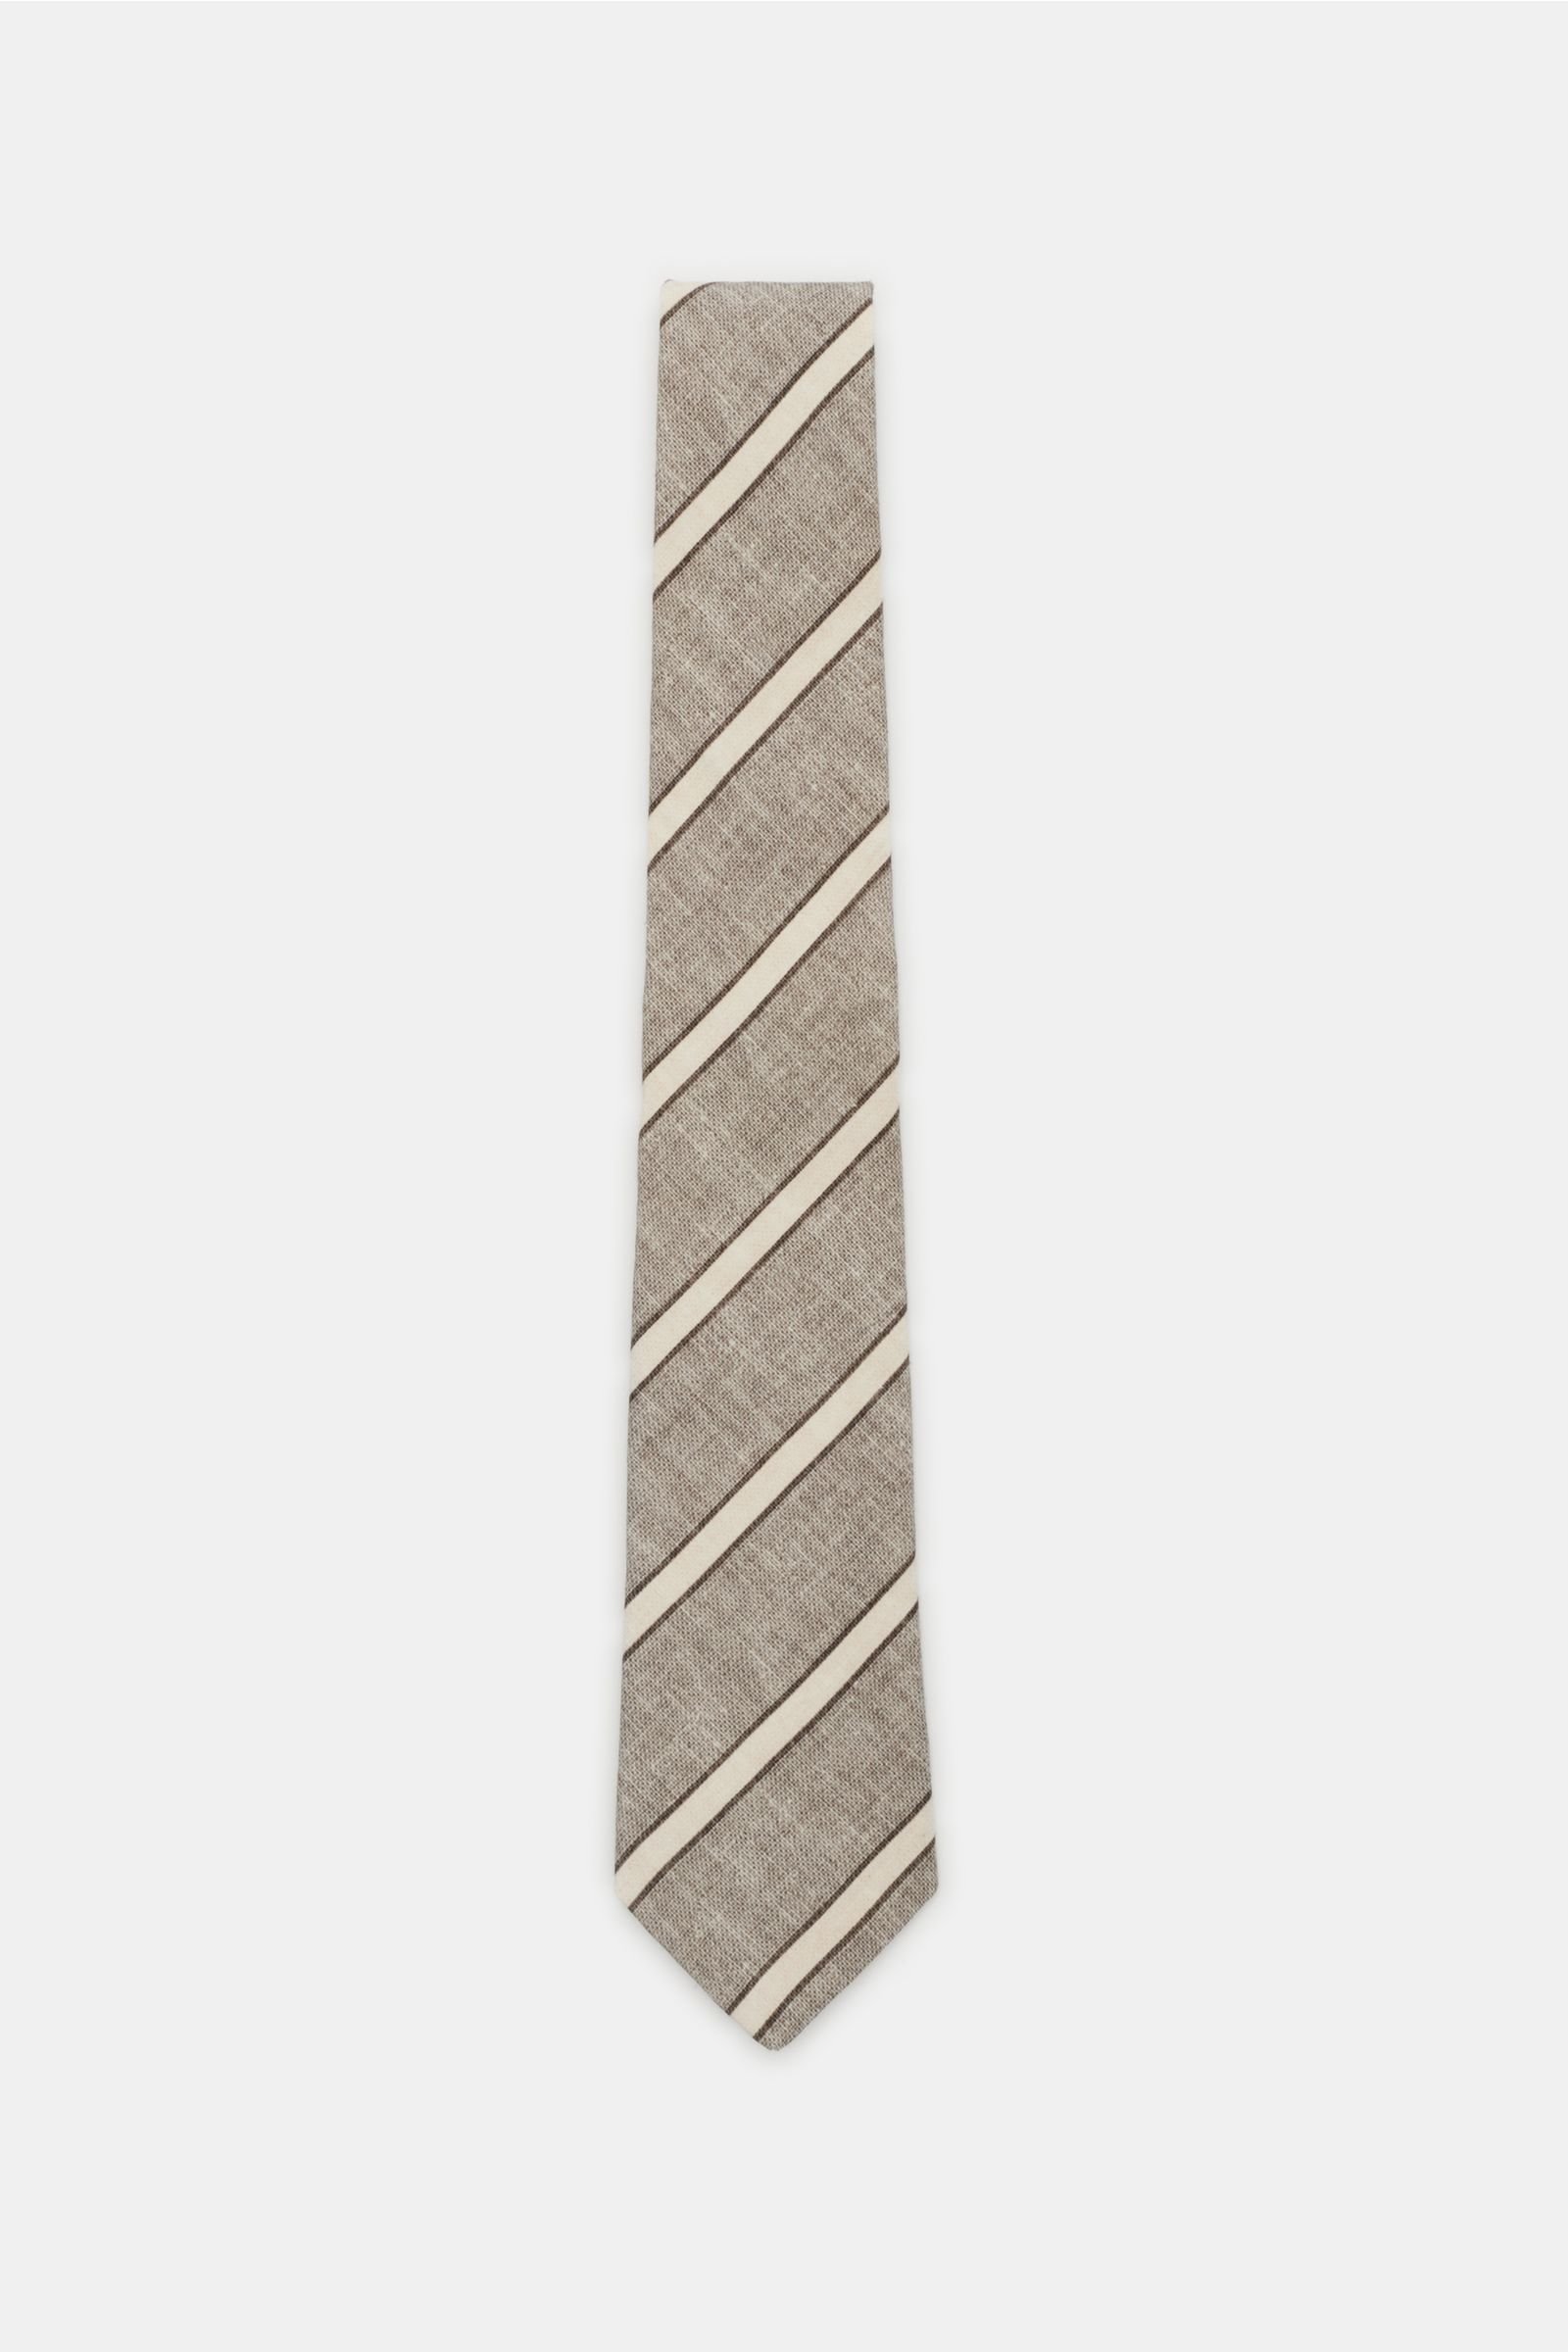 Krawatte graubraun/beige gestreift